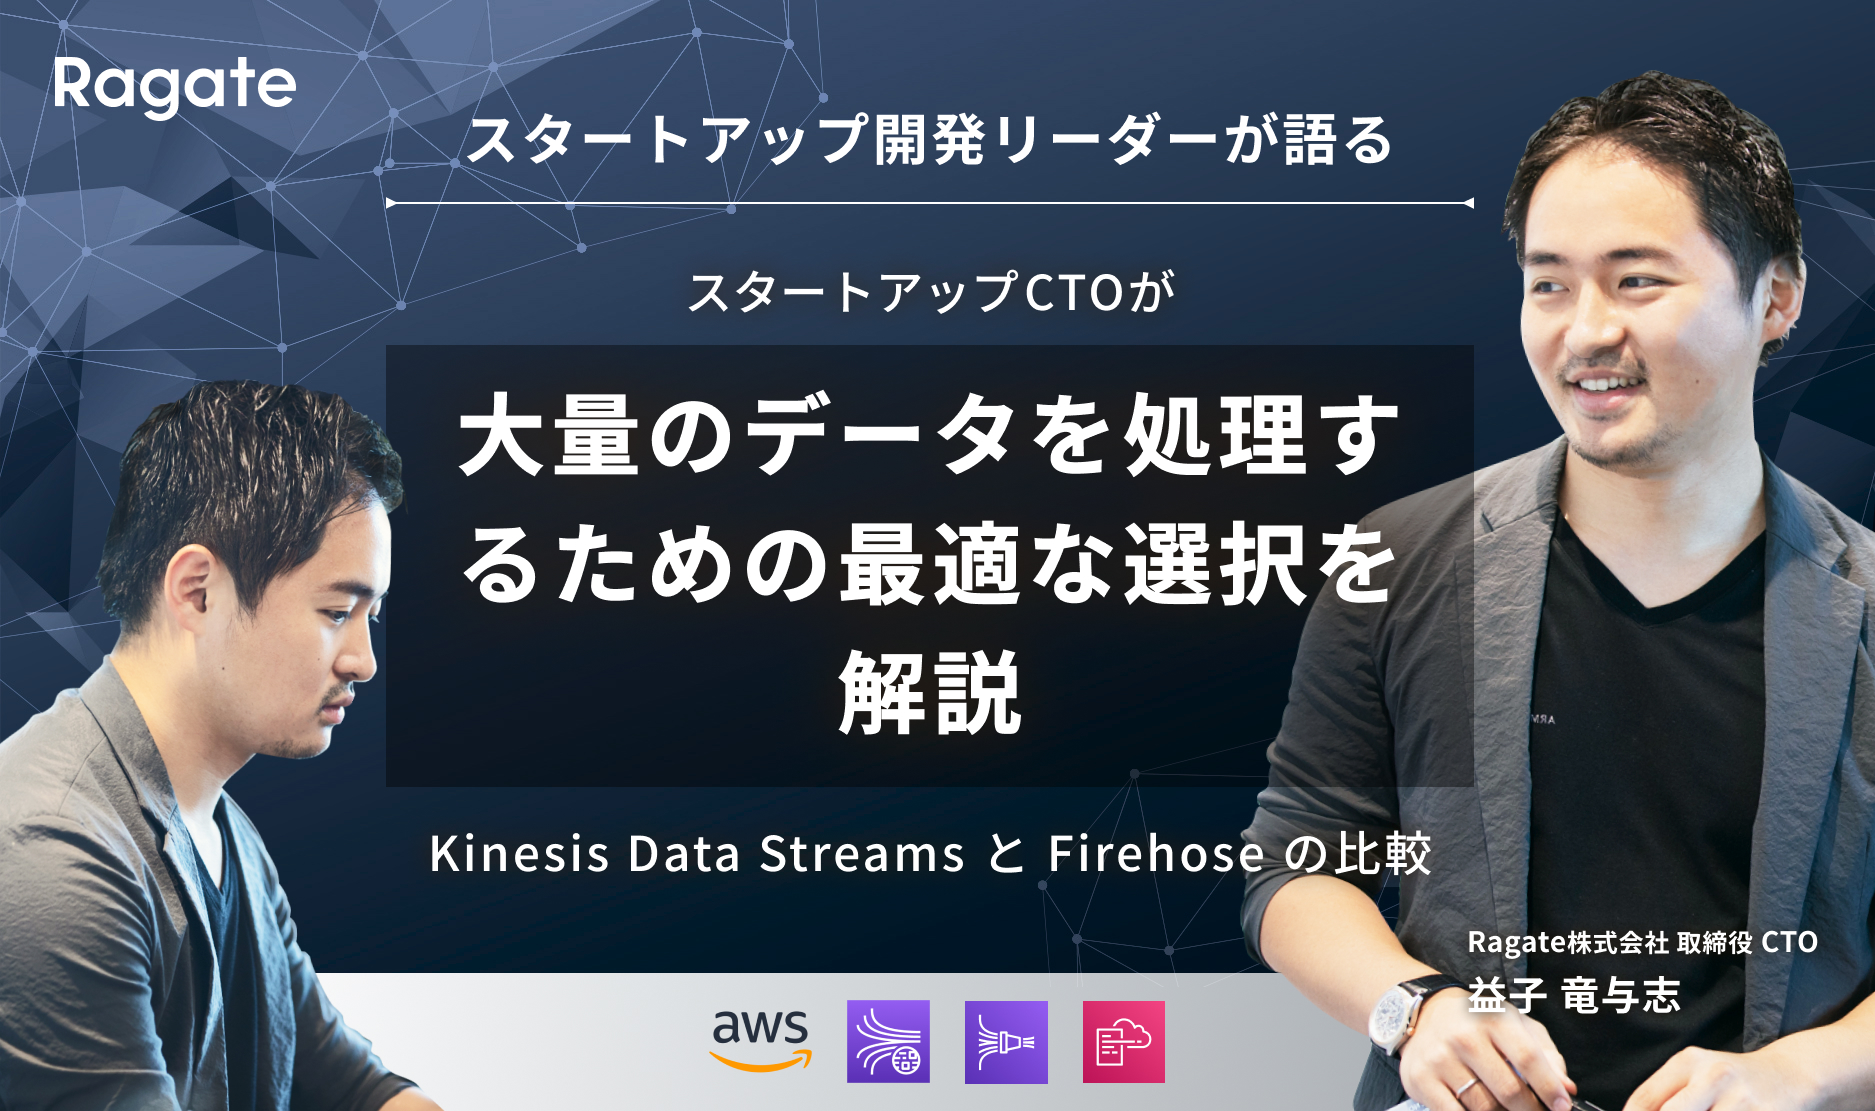 大量のデータを処理するための最適な選択: Kinesis Data Streams と Firehose の比較